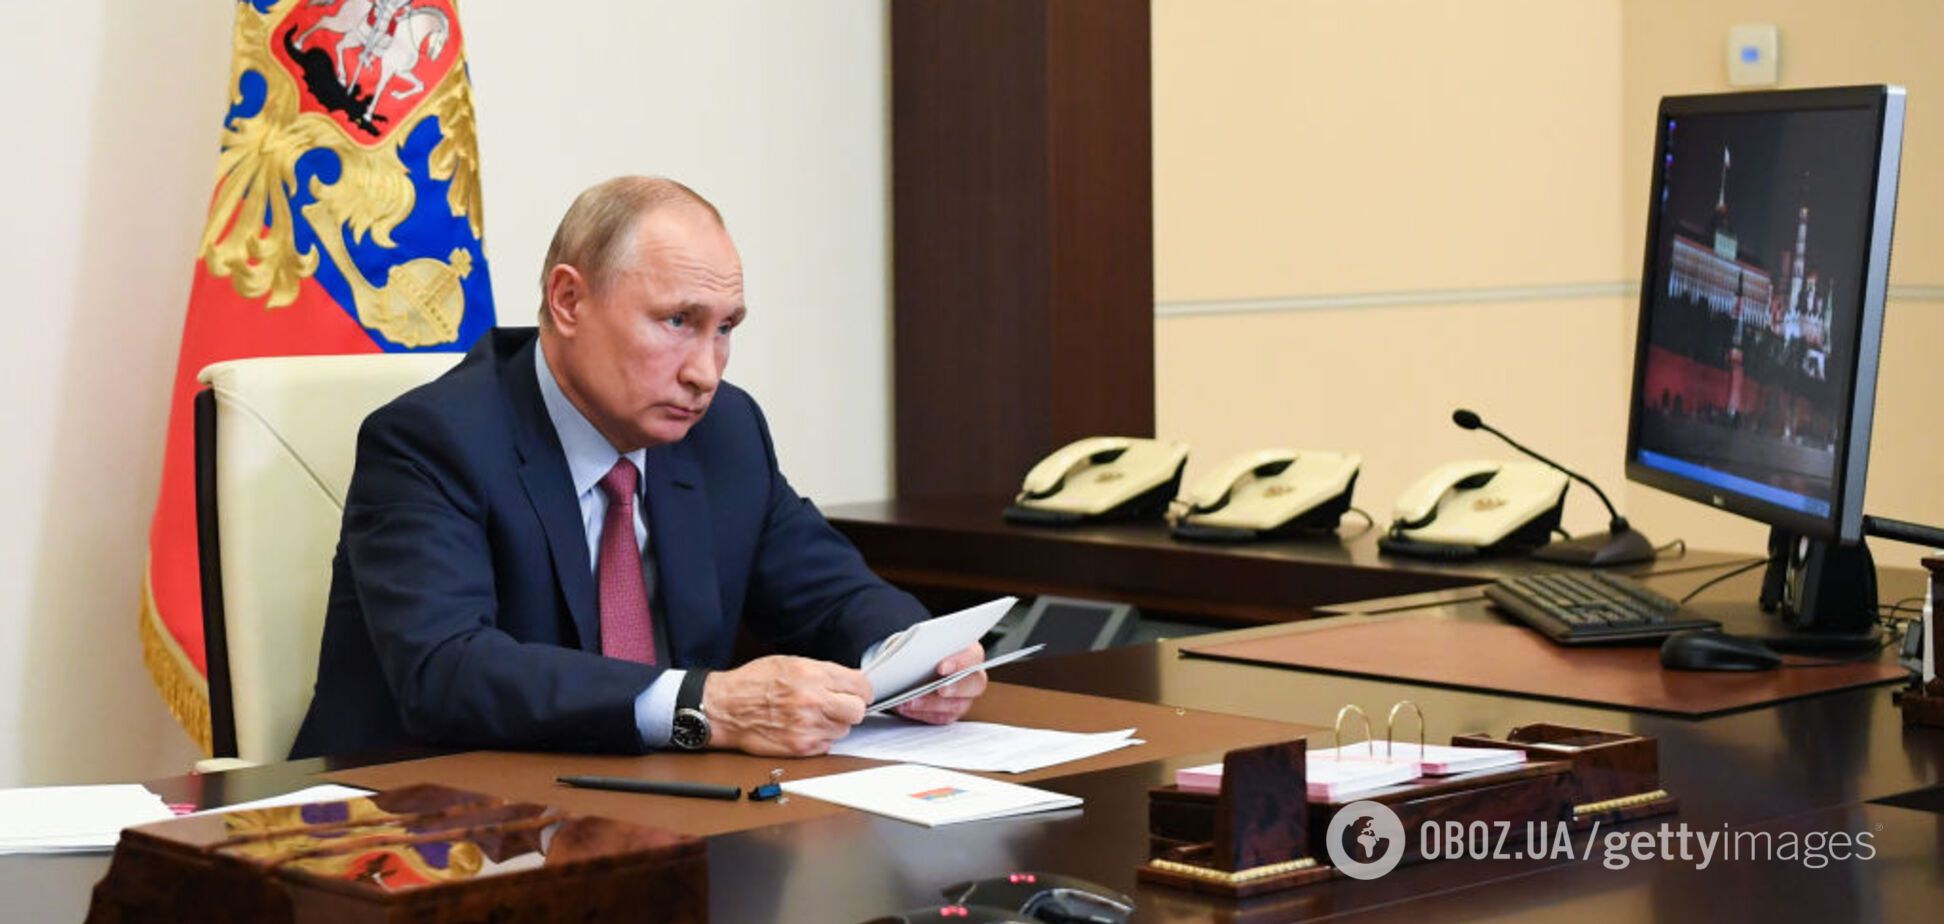 'Интуичить не надо': россияне оценили, как Путин улучшил 'великий и могучий'. Видео